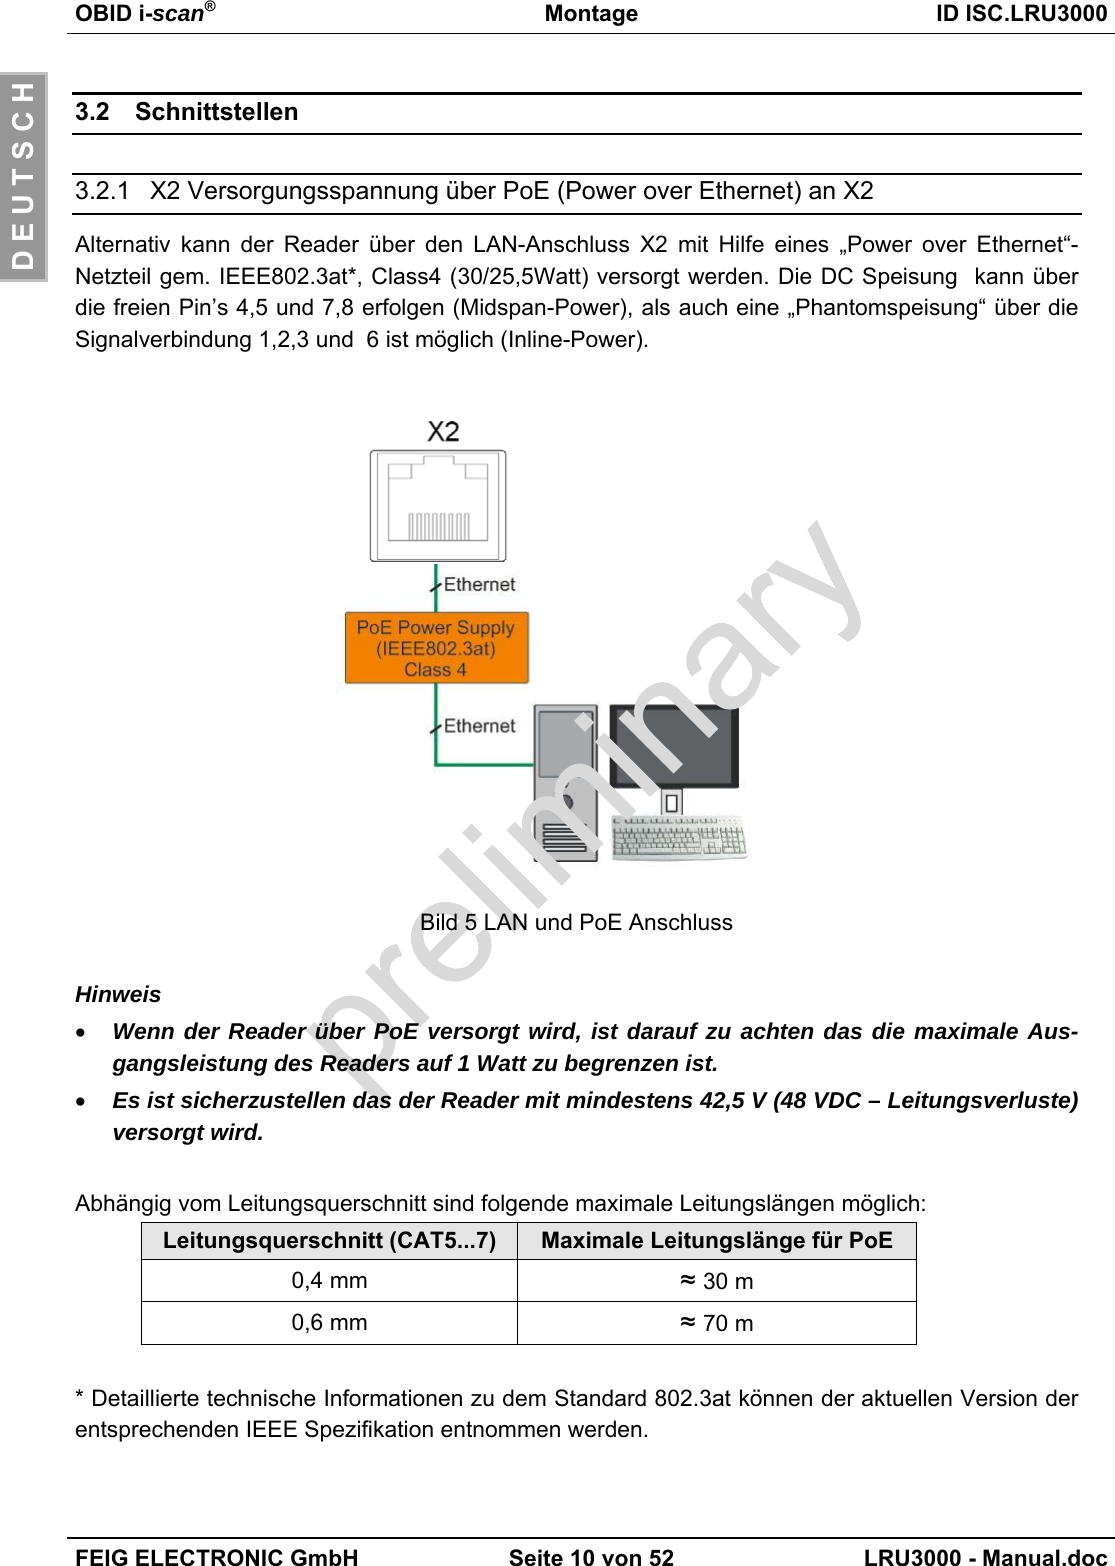 OBID i-scan®Montage ID ISC.LRU3000FEIG ELECTRONIC GmbH Seite 10 von 52 LRU3000 - Manual.docD E U T S C H3.2 Schnittstellen3.2.1 X2 Versorgungsspannung über PoE (Power over Ethernet) an X2Alternativ kann der Reader über den LAN-Anschluss X2 mit Hilfe eines „Power over Ethernet“-Netzteil gem. IEEE802.3at*, Class4 (30/25,5Watt) versorgt werden. Die DC Speisung  kann überdie freien Pin’s 4,5 und 7,8 erfolgen (Midspan-Power), als auch eine „Phantomspeisung“ über dieSignalverbindung 1,2,3 und  6 ist möglich (Inline-Power).Bild 5 LAN und PoE AnschlussHinweis• Wenn der Reader über PoE versorgt wird, ist darauf zu achten das die maximale Aus-gangsleistung des Readers auf 1 Watt zu begrenzen ist.• Es ist sicherzustellen das der Reader mit mindestens 42,5 V (48 VDC – Leitungsverluste)versorgt wird.Abhängig vom Leitungsquerschnitt sind folgende maximale Leitungslängen möglich:Leitungsquerschnitt (CAT5...7) Maximale Leitungslänge für PoE0,4 mm ≈ 30 m0,6 mm ≈ 70 m* Detaillierte technische Informationen zu dem Standard 802.3at können der aktuellen Version derentsprechenden IEEE Spezifikation entnommen werden.